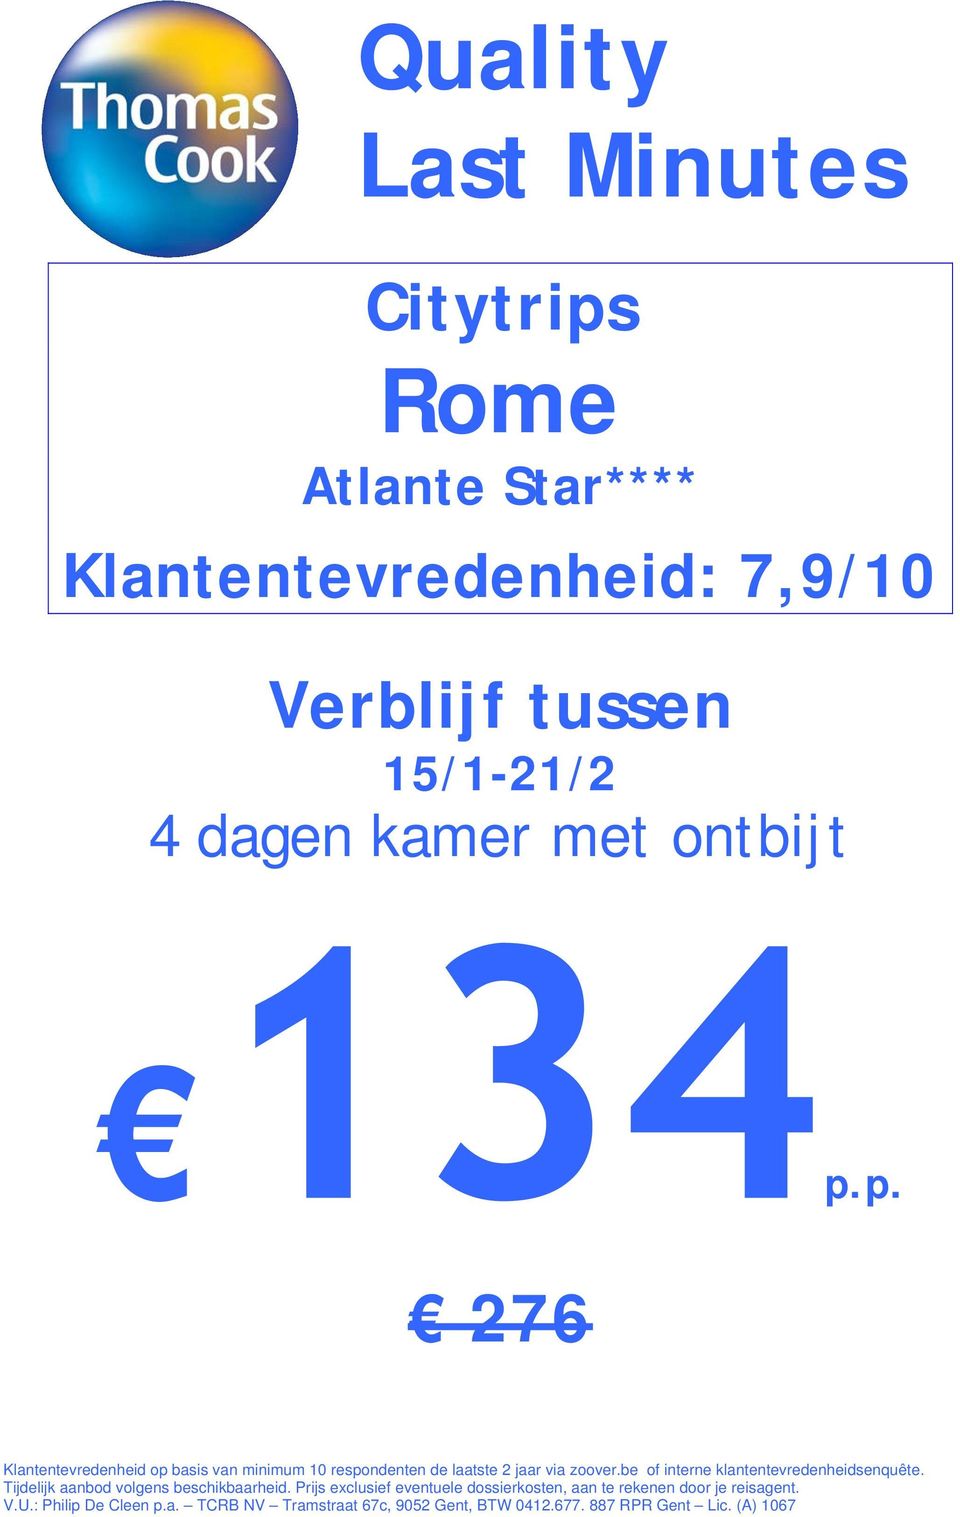 Prijs exclusief eventuele dossierkosten, aan te rekenen door je reisagent. V.U.: Philip De Cleen p.a. TCRB NV Tramstraat 67c, 9052 Gent, BTW 0412.